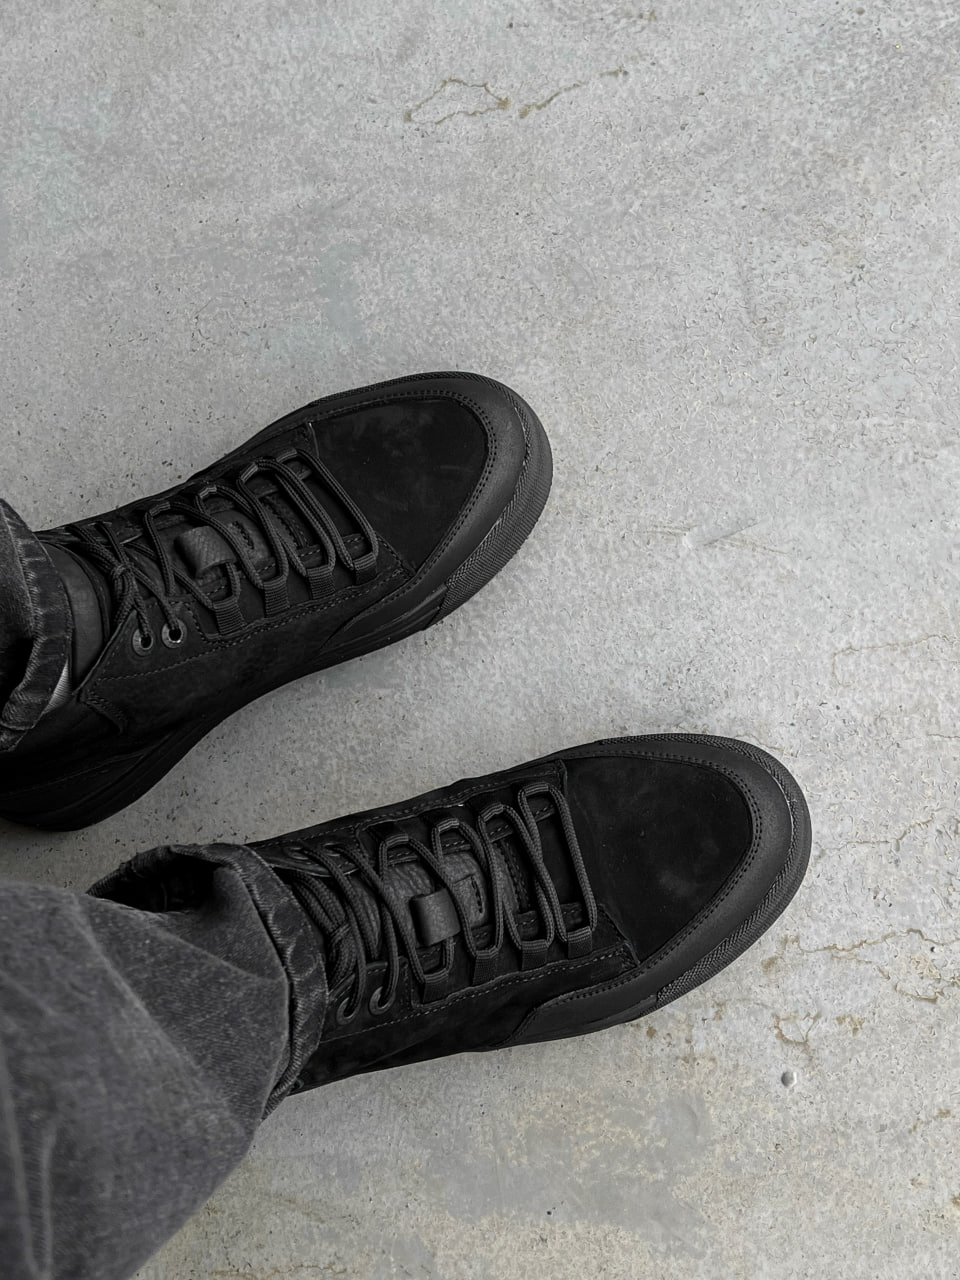 Ботинки зимові чоловічі Reload - Frost, чорний нубук - Фото 3